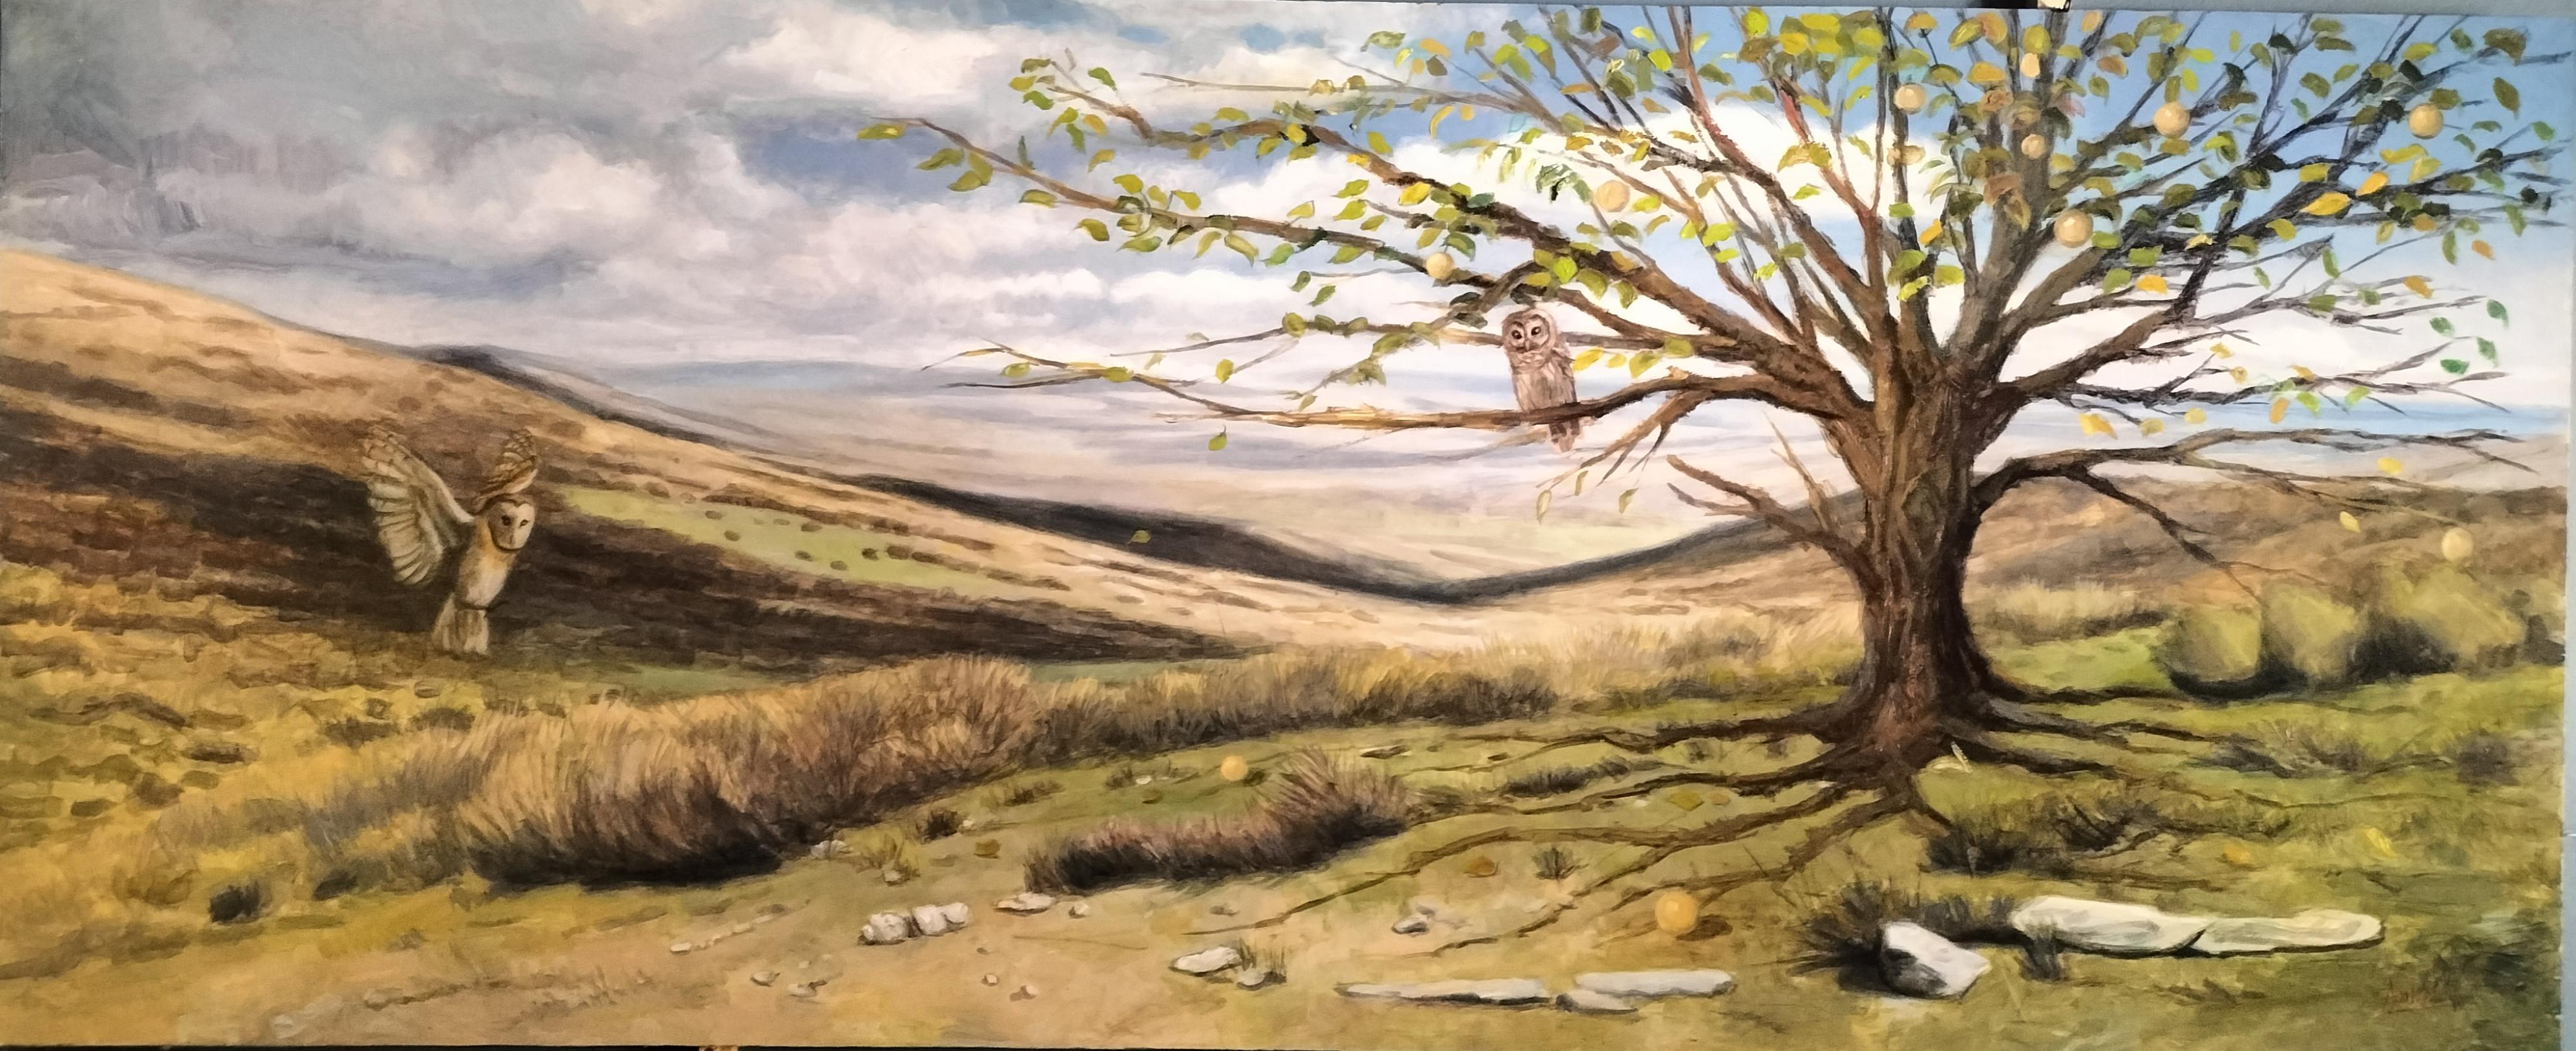 Juan Herrezuelo, Anhelo Landscape Painting - "Owls at Dawn", Oil on panel Post-Impressionist Large Format Living Landscape